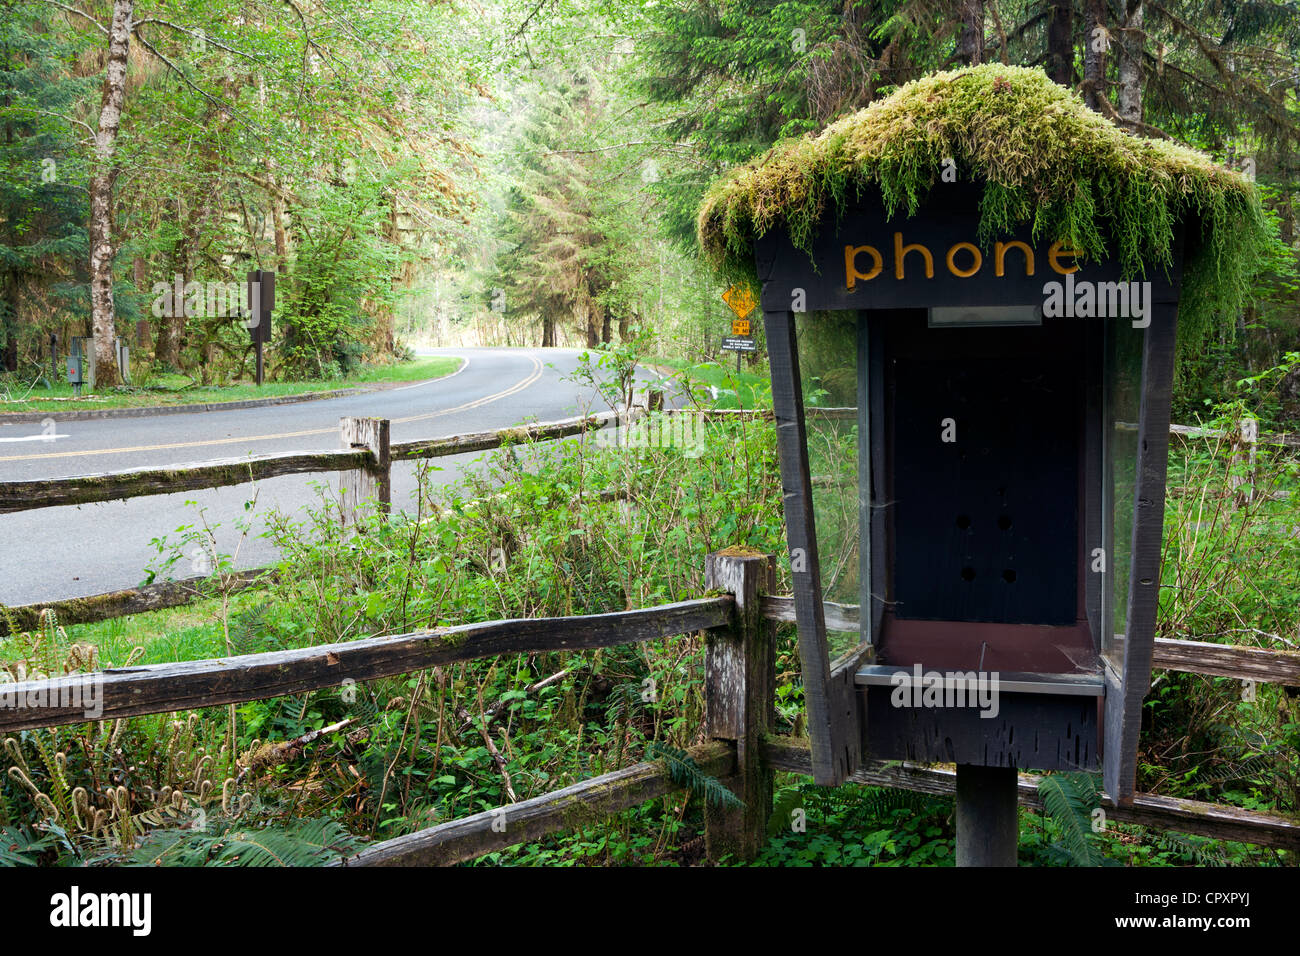 Abbandonata cabina telefonica - Hoh Rainforest - Parco nazionale di Olympic, vicino a forche, Washington, Stati Uniti d'America Foto Stock